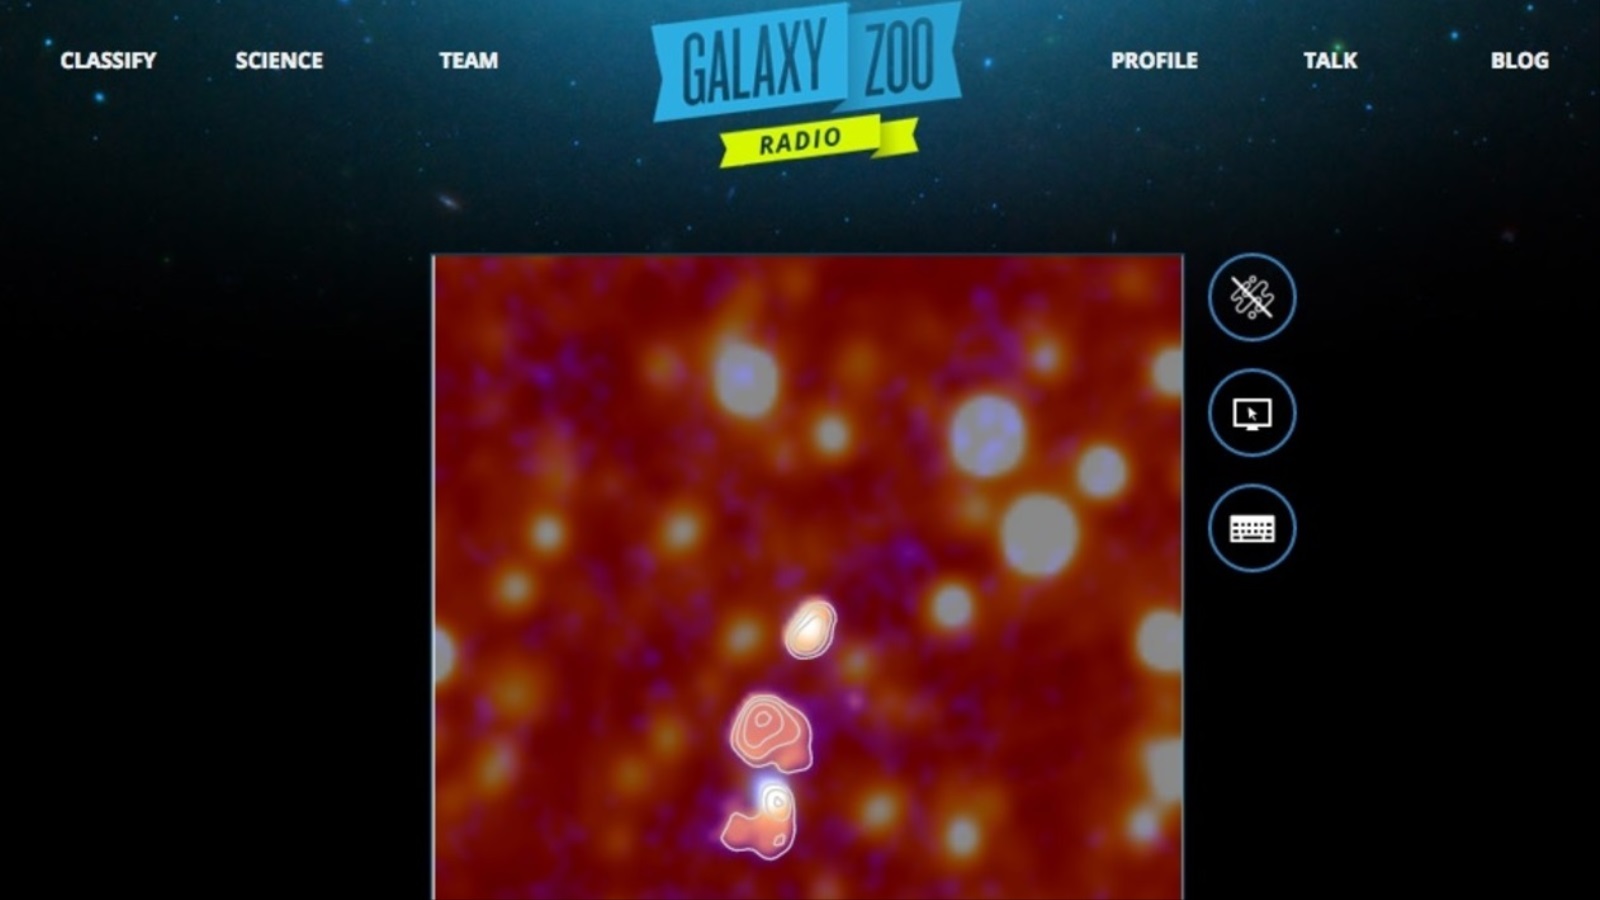 ظهرت من لعبة Galaxy Zoo 13 نسخة، وتعتبر اللعبة العلمية الأكثر شهرة بين الناس في العالم كله.